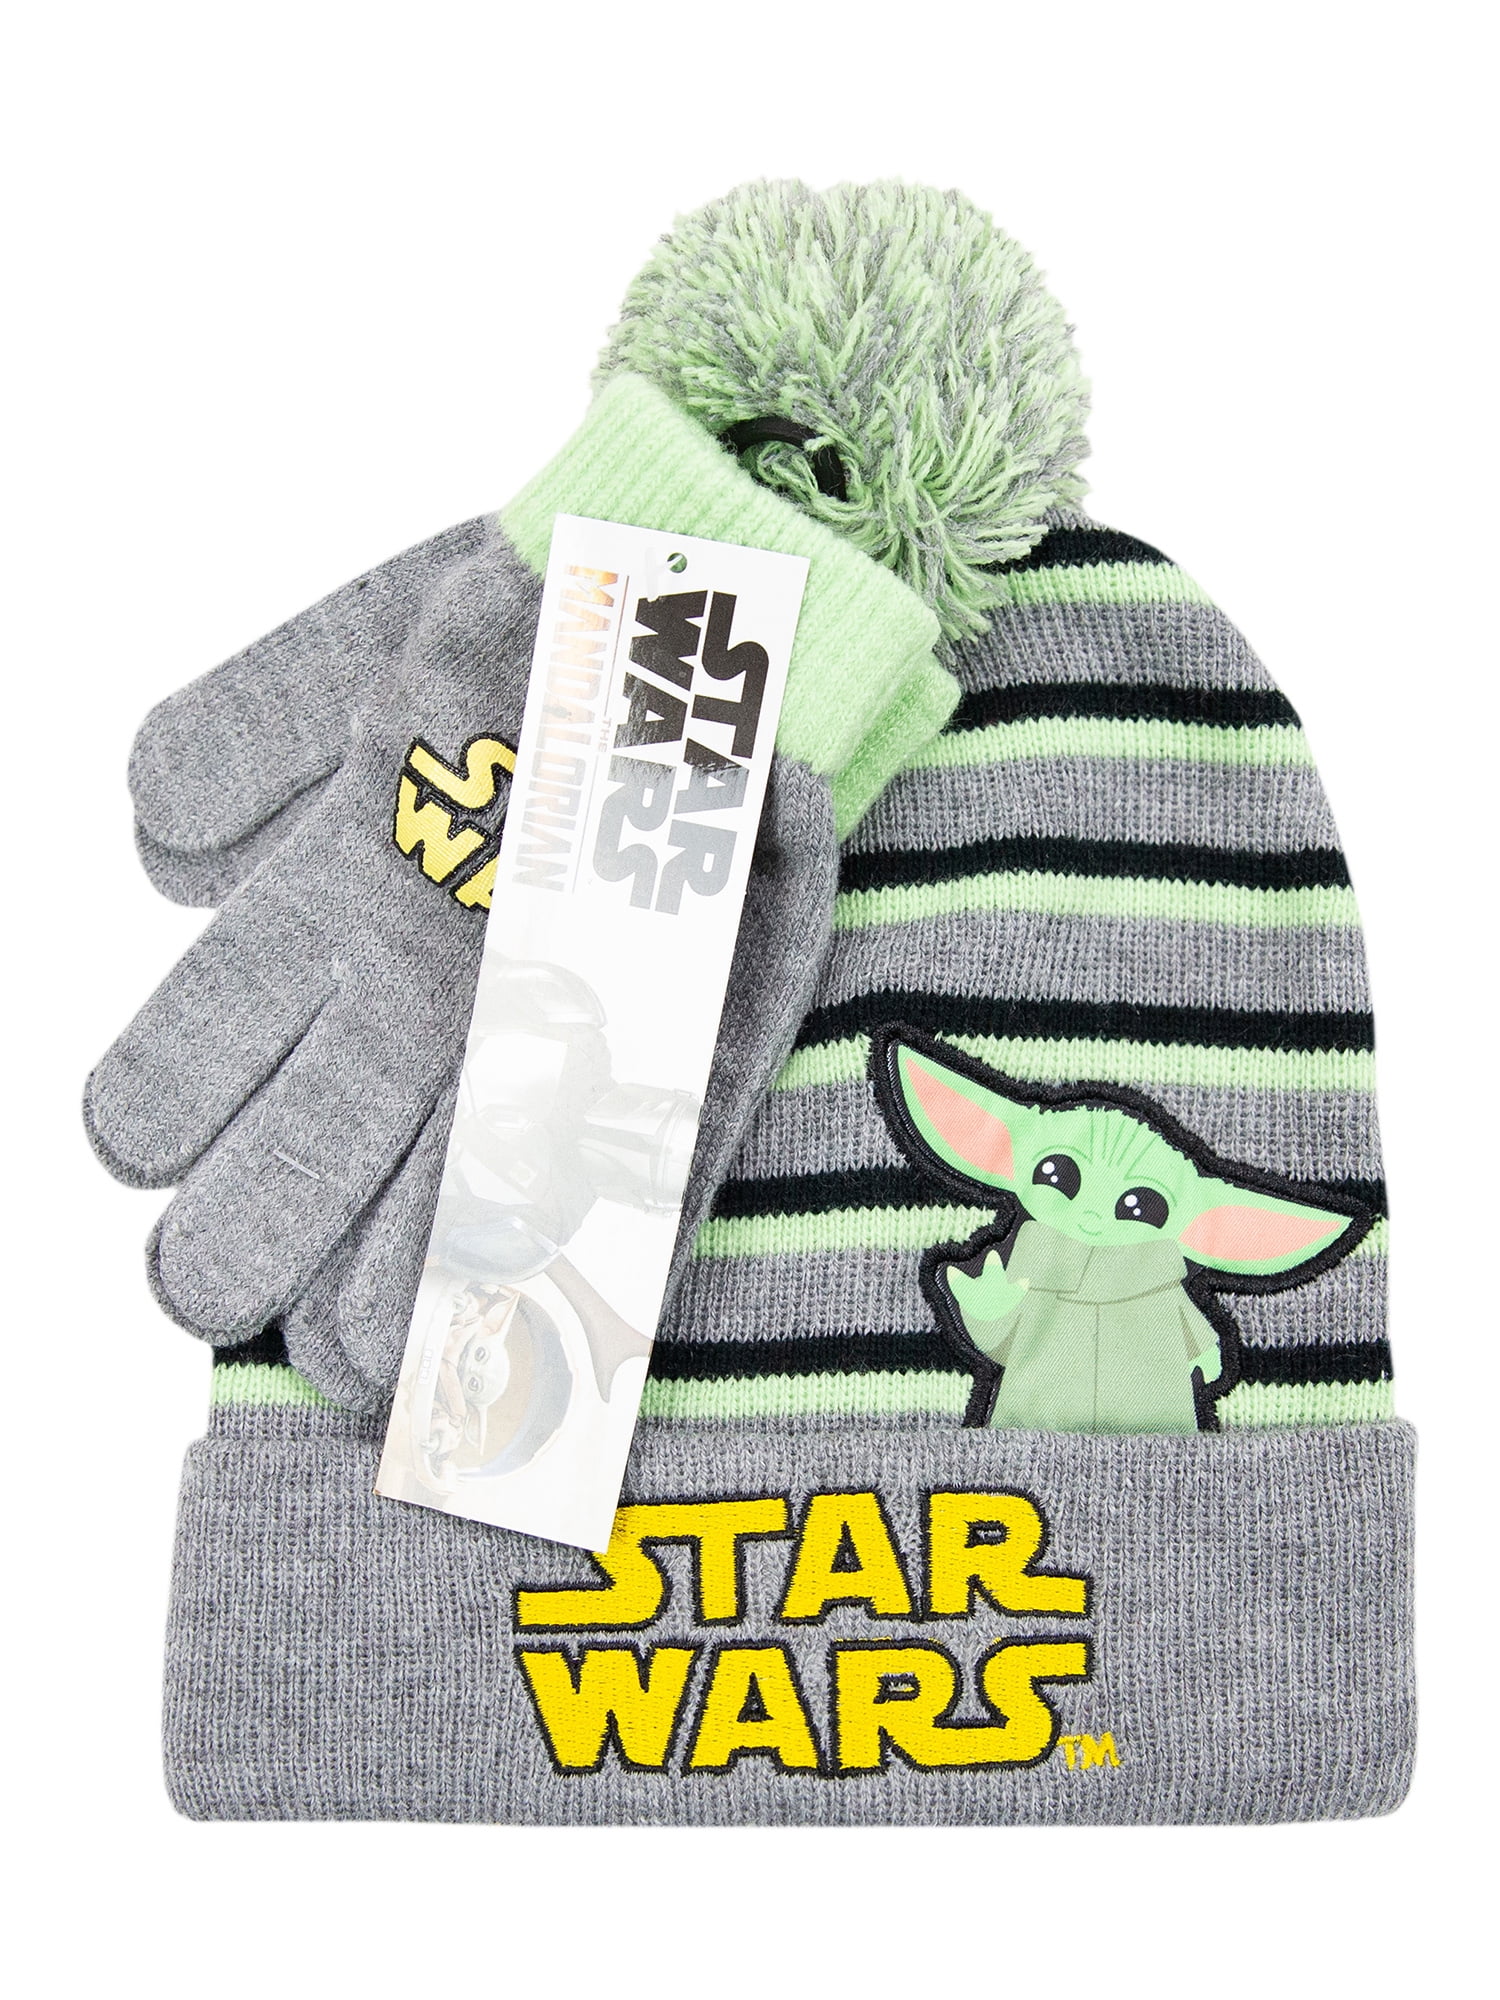 cilinder baseren schot Boys Star Wars Baby Yoda 2-Piece Beanie Style Hat and Glove Set -  Walmart.com